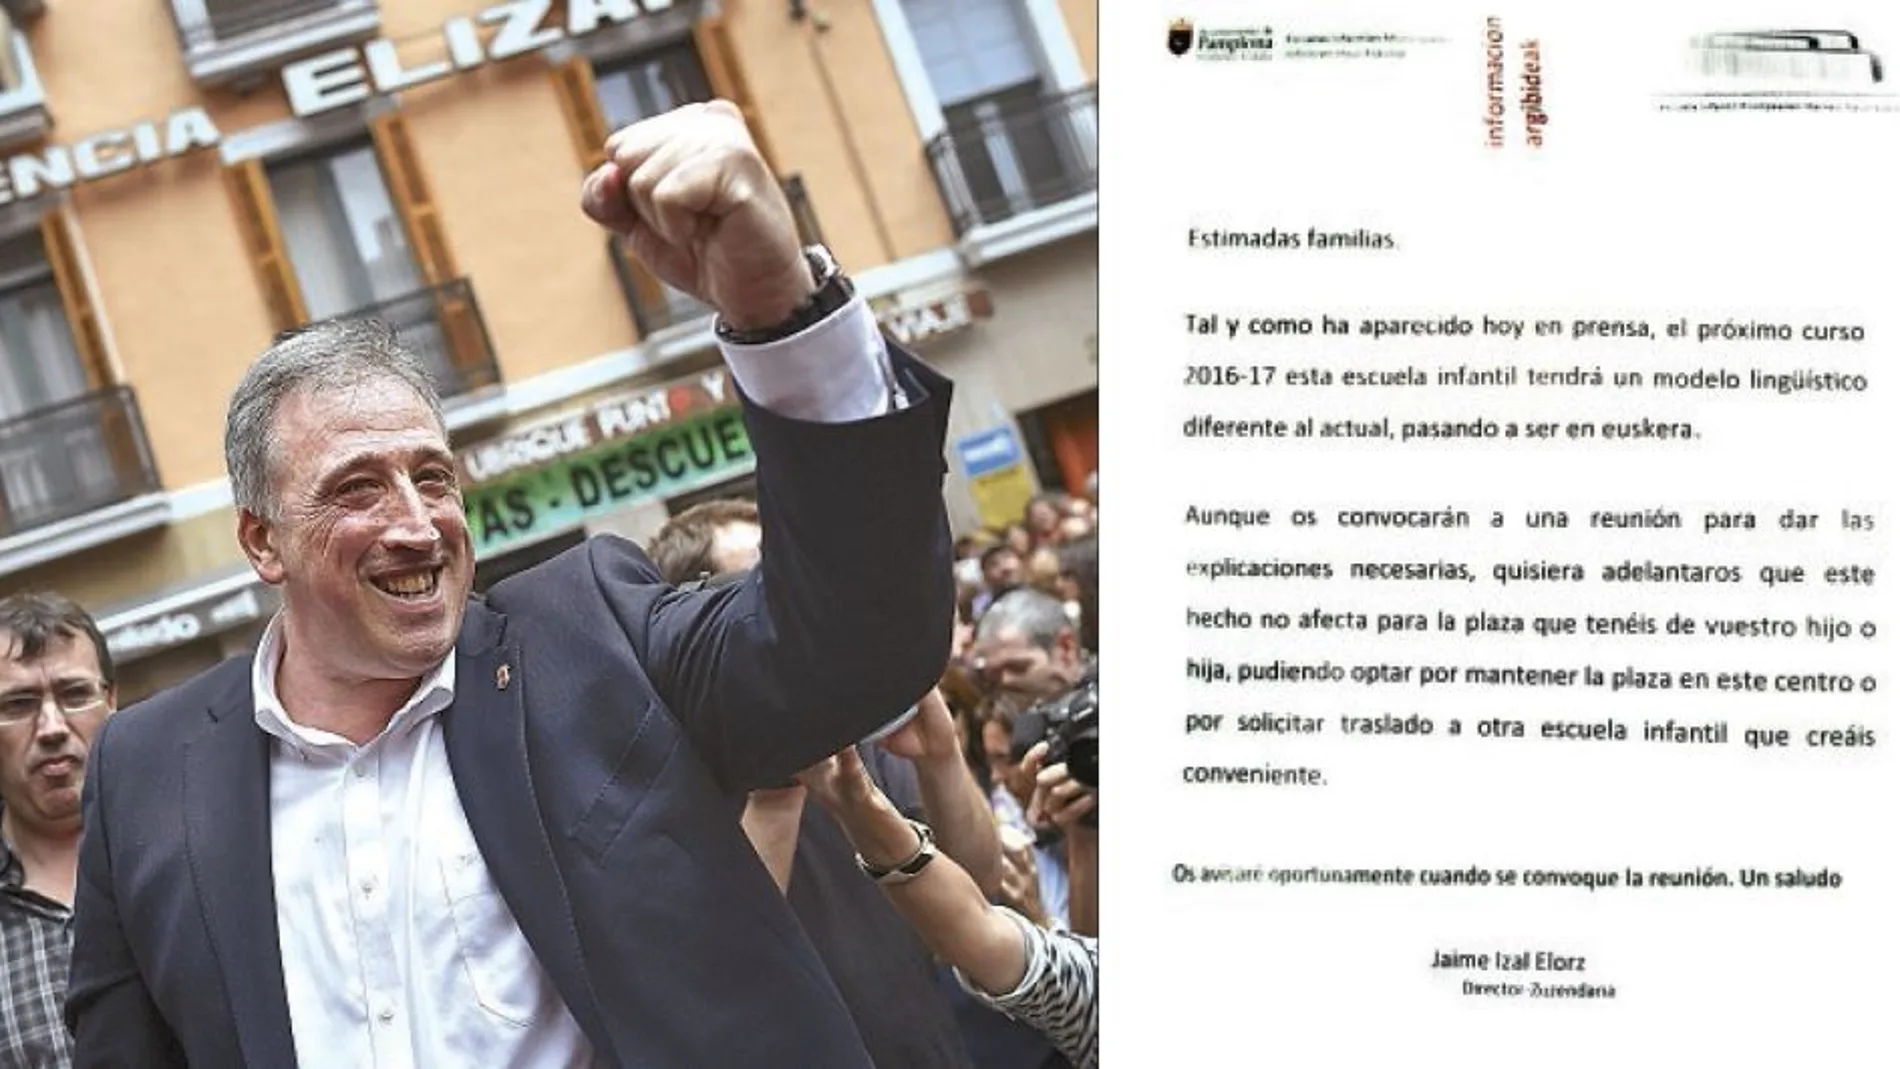 Los directores de las escuelas infantiles comunican con una carta (en la imagen) a los padres la decisión del Ayuntamiento gobernado por Joseba Asirón de cambiar el modelo lingüístico